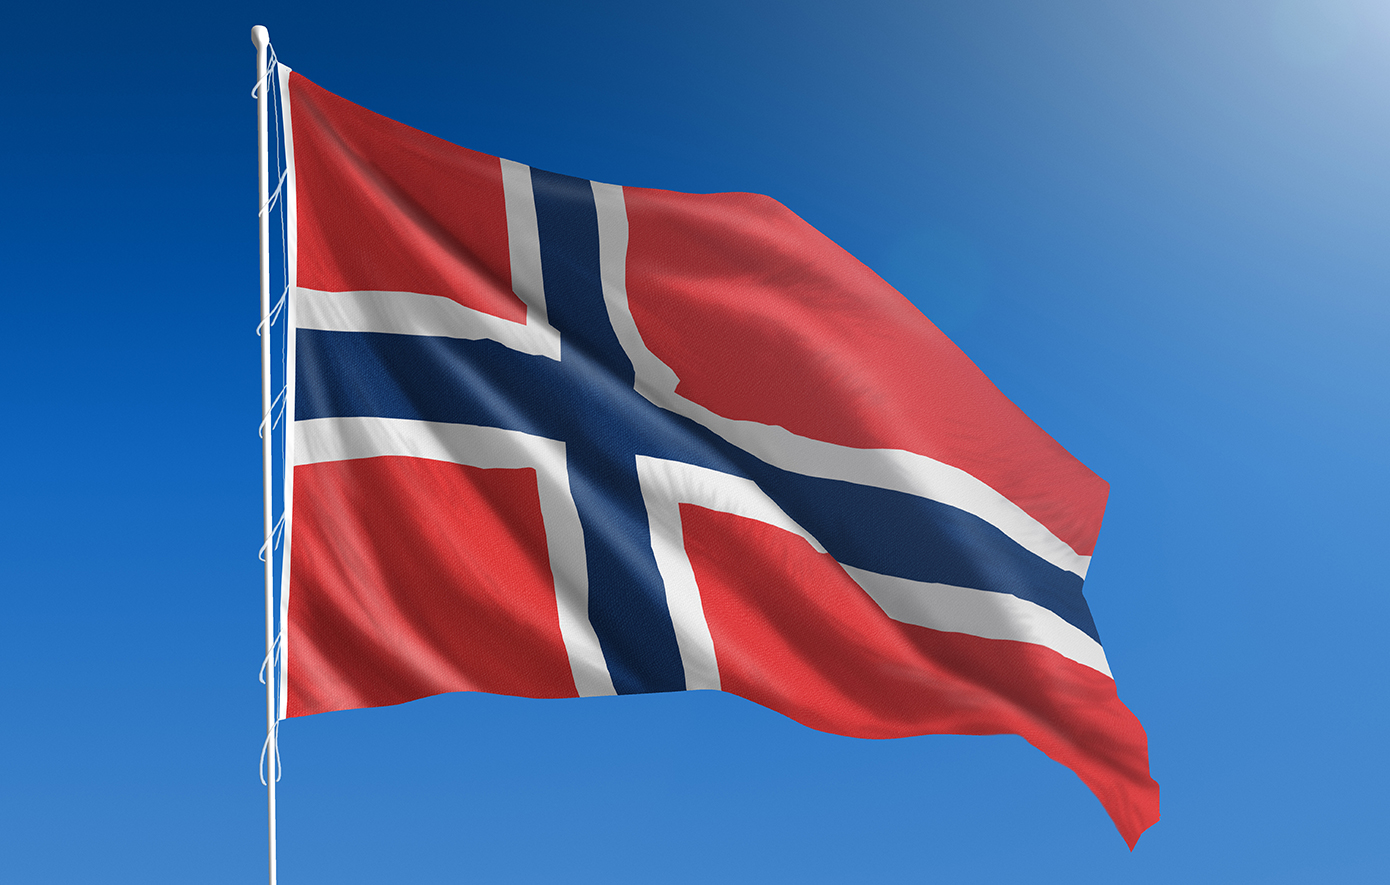 Η Νορβηγία ανακοινώνει σήμερα την αναγνώριση του παλαιστινιακού κράτους